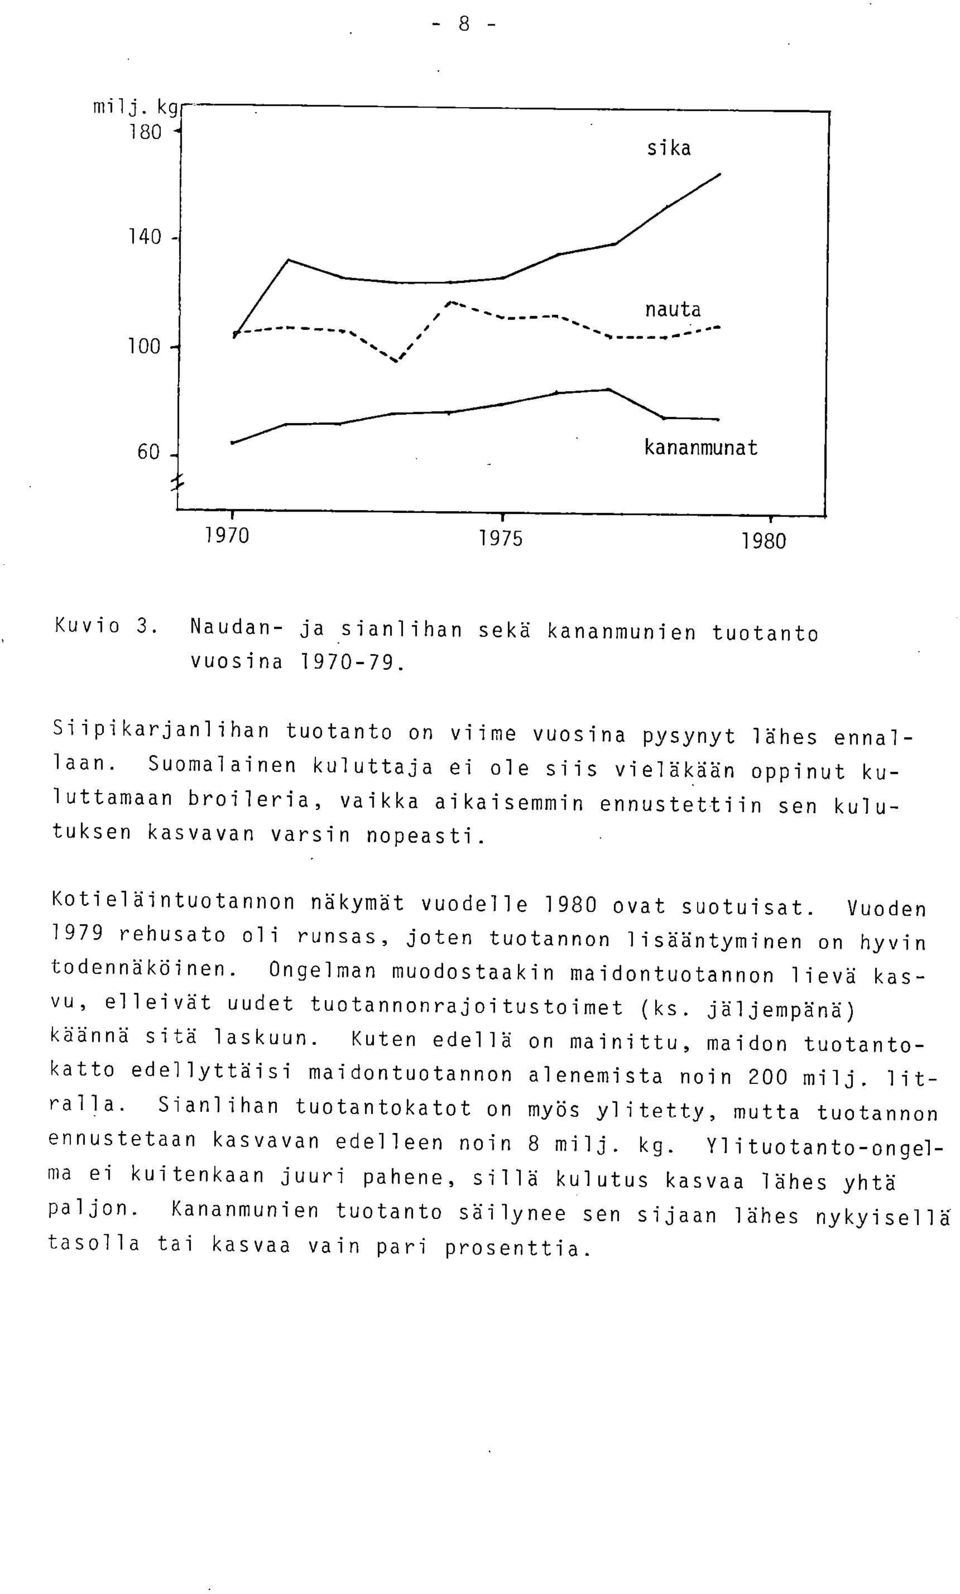 Kotieläintuotannon näkymät vuodelle 1980 ovat suotuisat. Vuoden 1979 rehusato oli runsas, joten tuotannon lisääntyminen on hyvin todennäköinen.